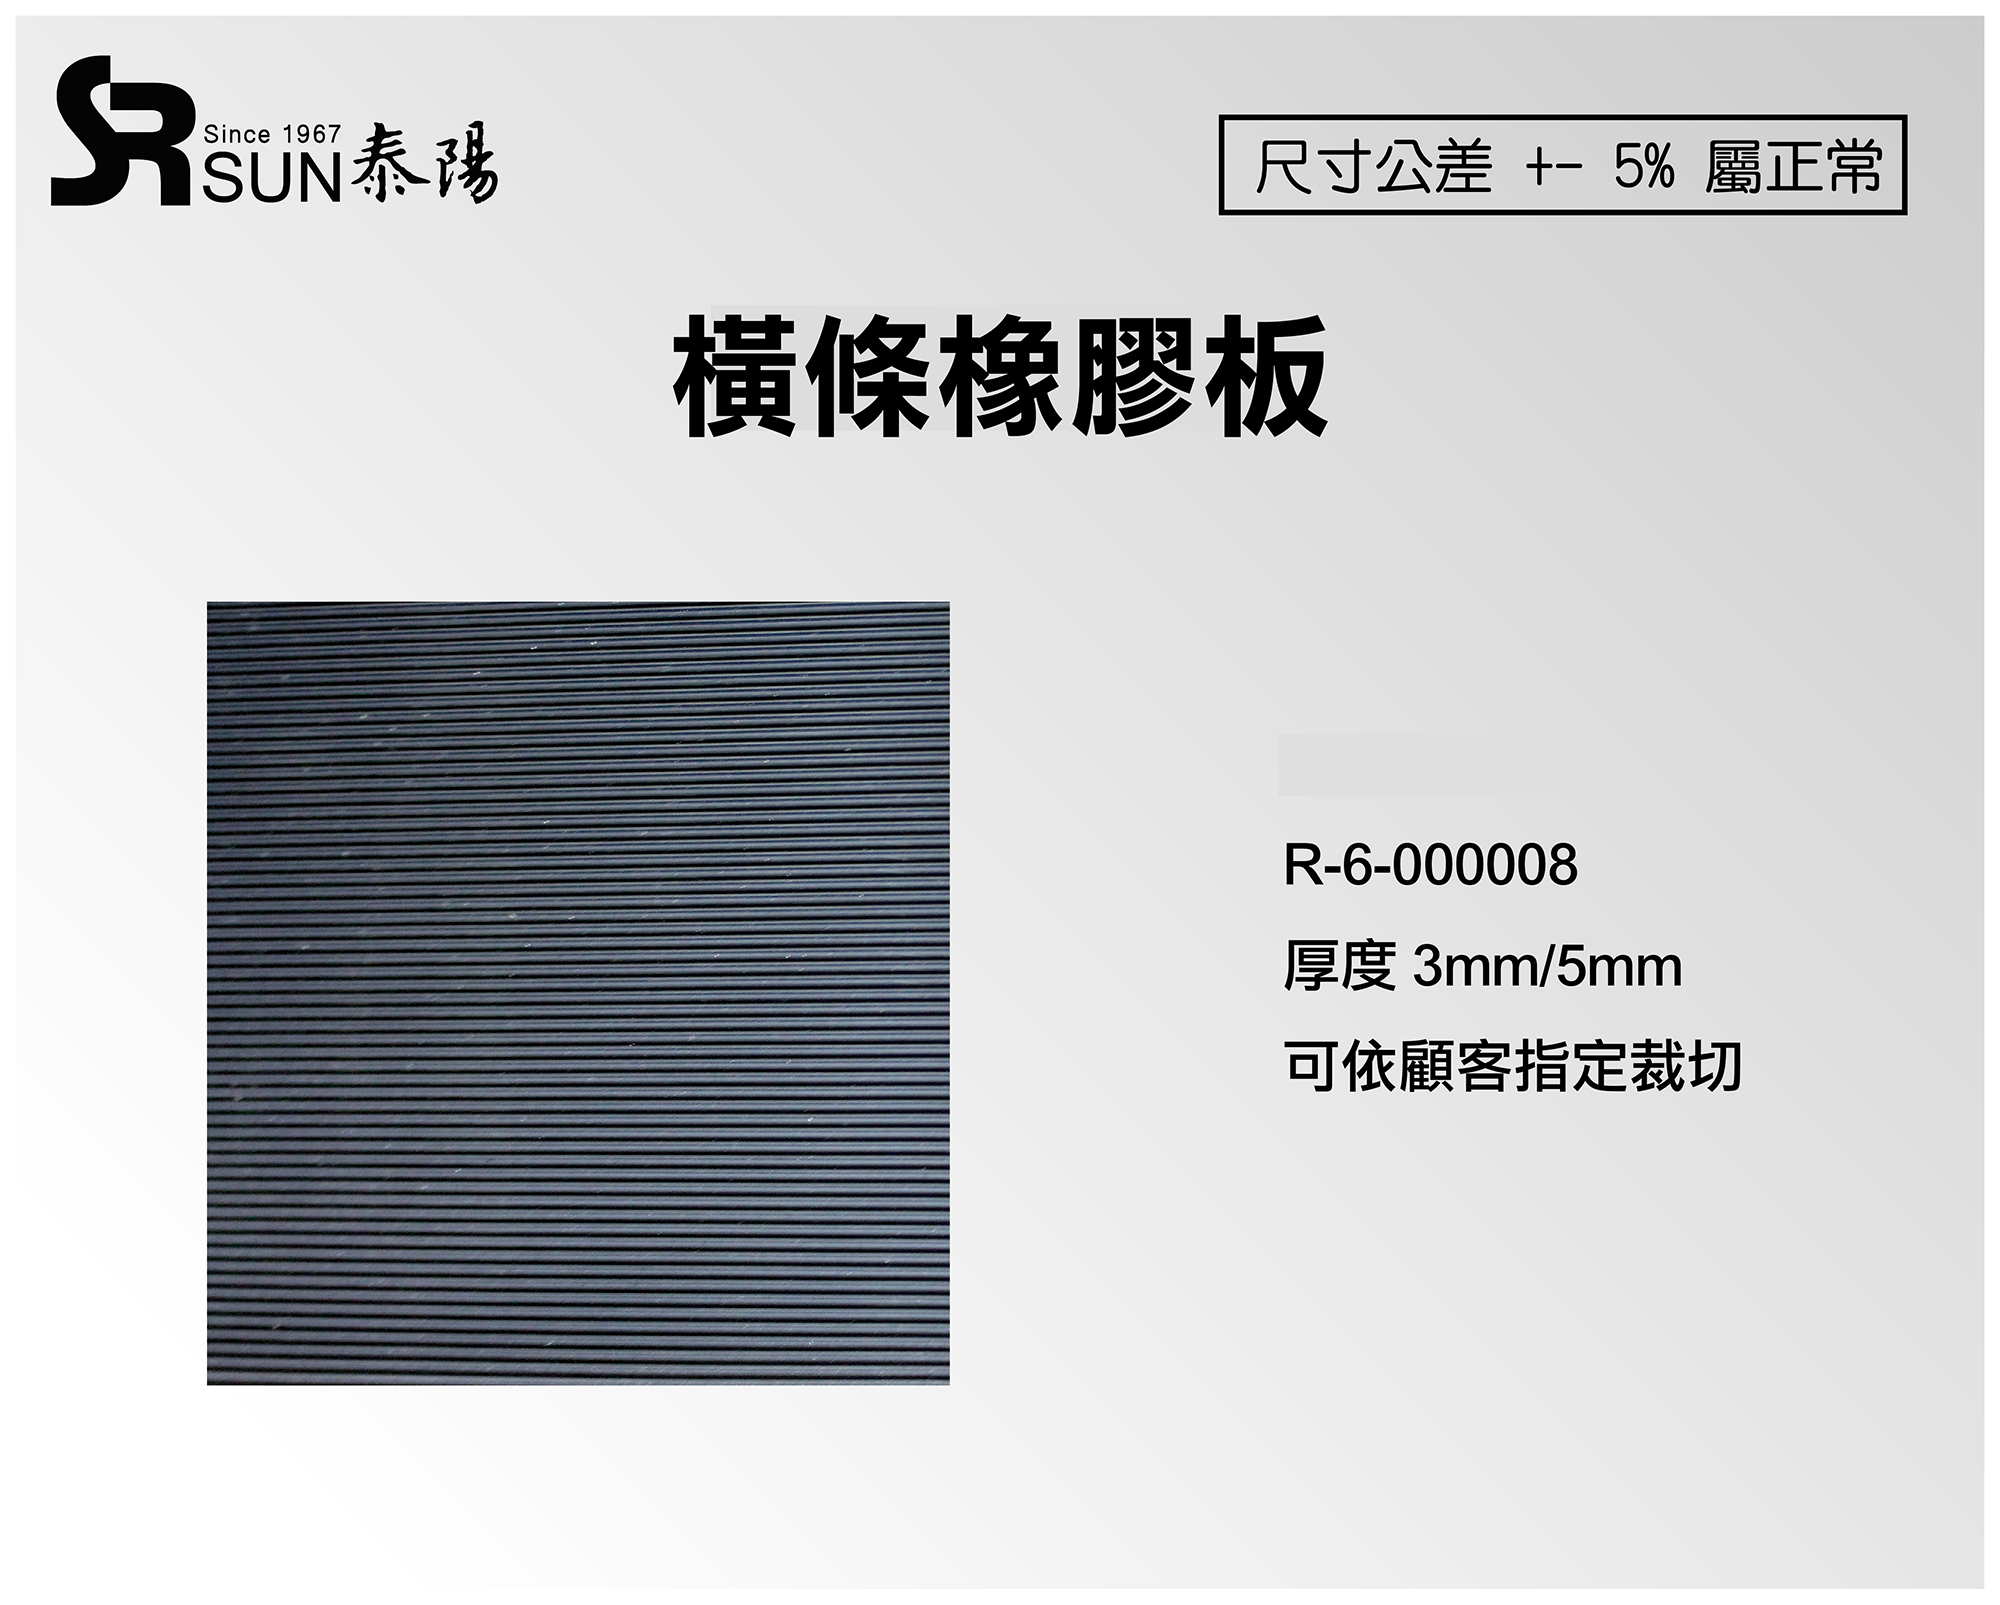 橫條橡膠板3/5mm(R-6-000008)